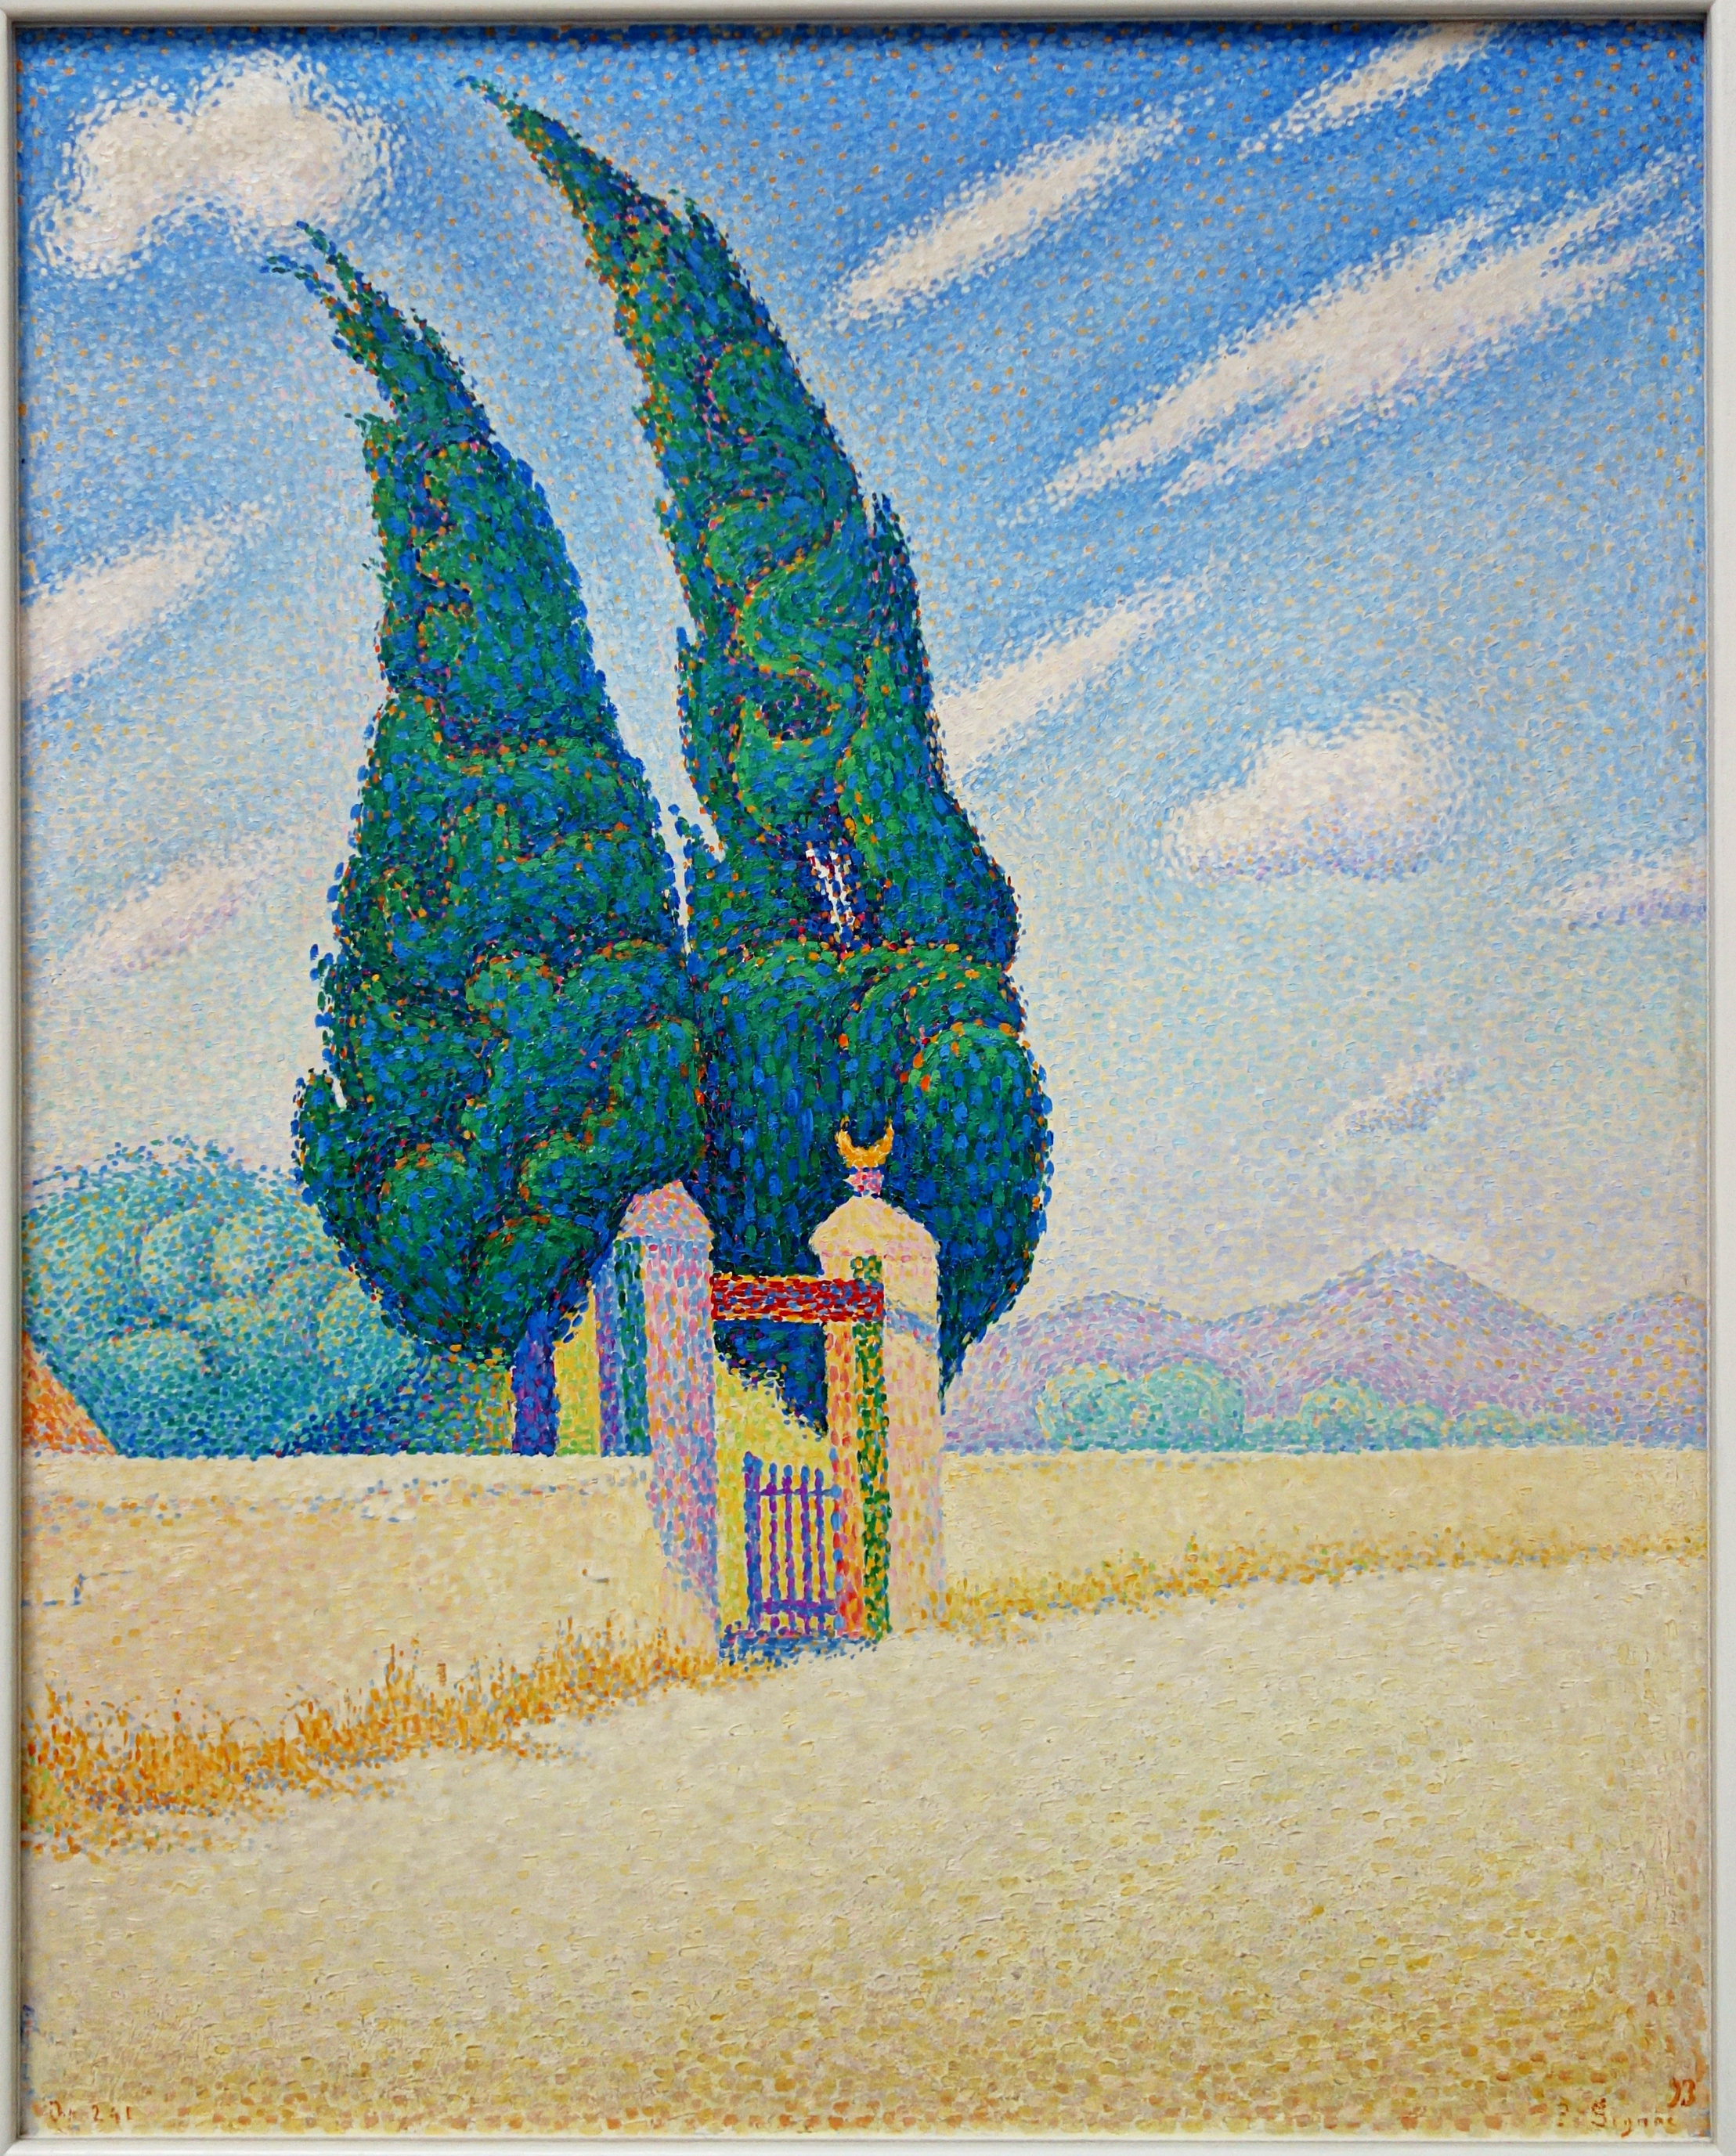 شجرتا سرو by Paul Signac - 1893 م - 81.5 × 65.5 سم 